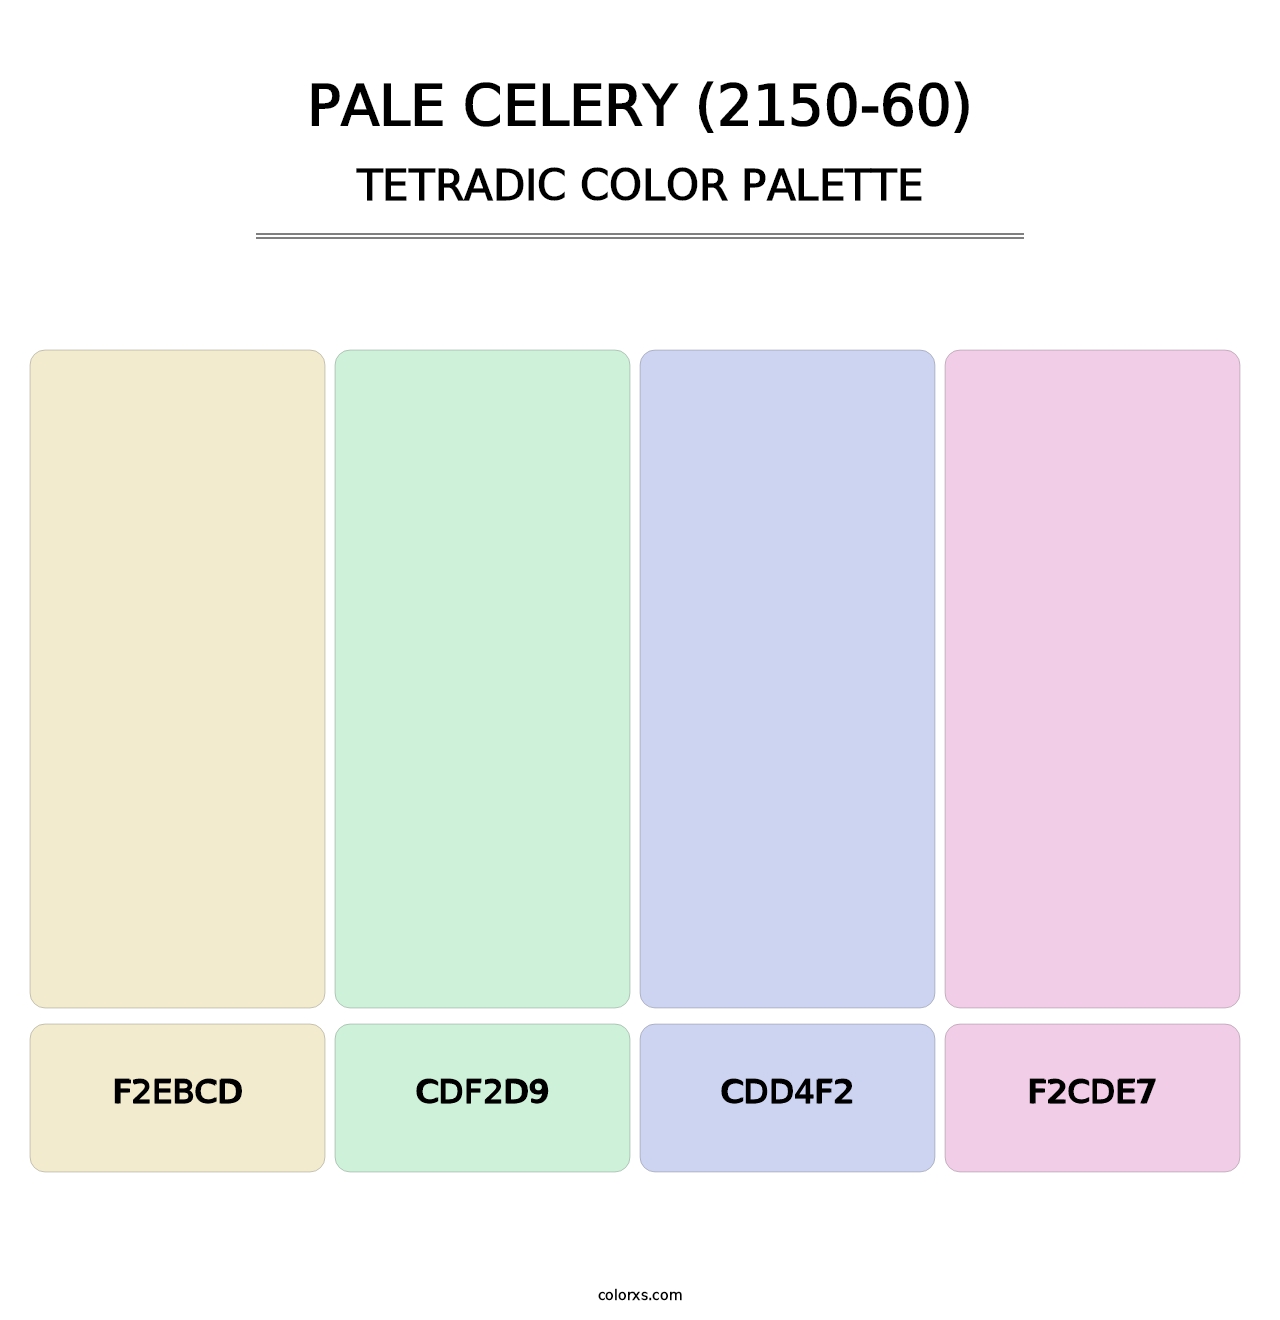 Pale Celery (2150-60) - Tetradic Color Palette